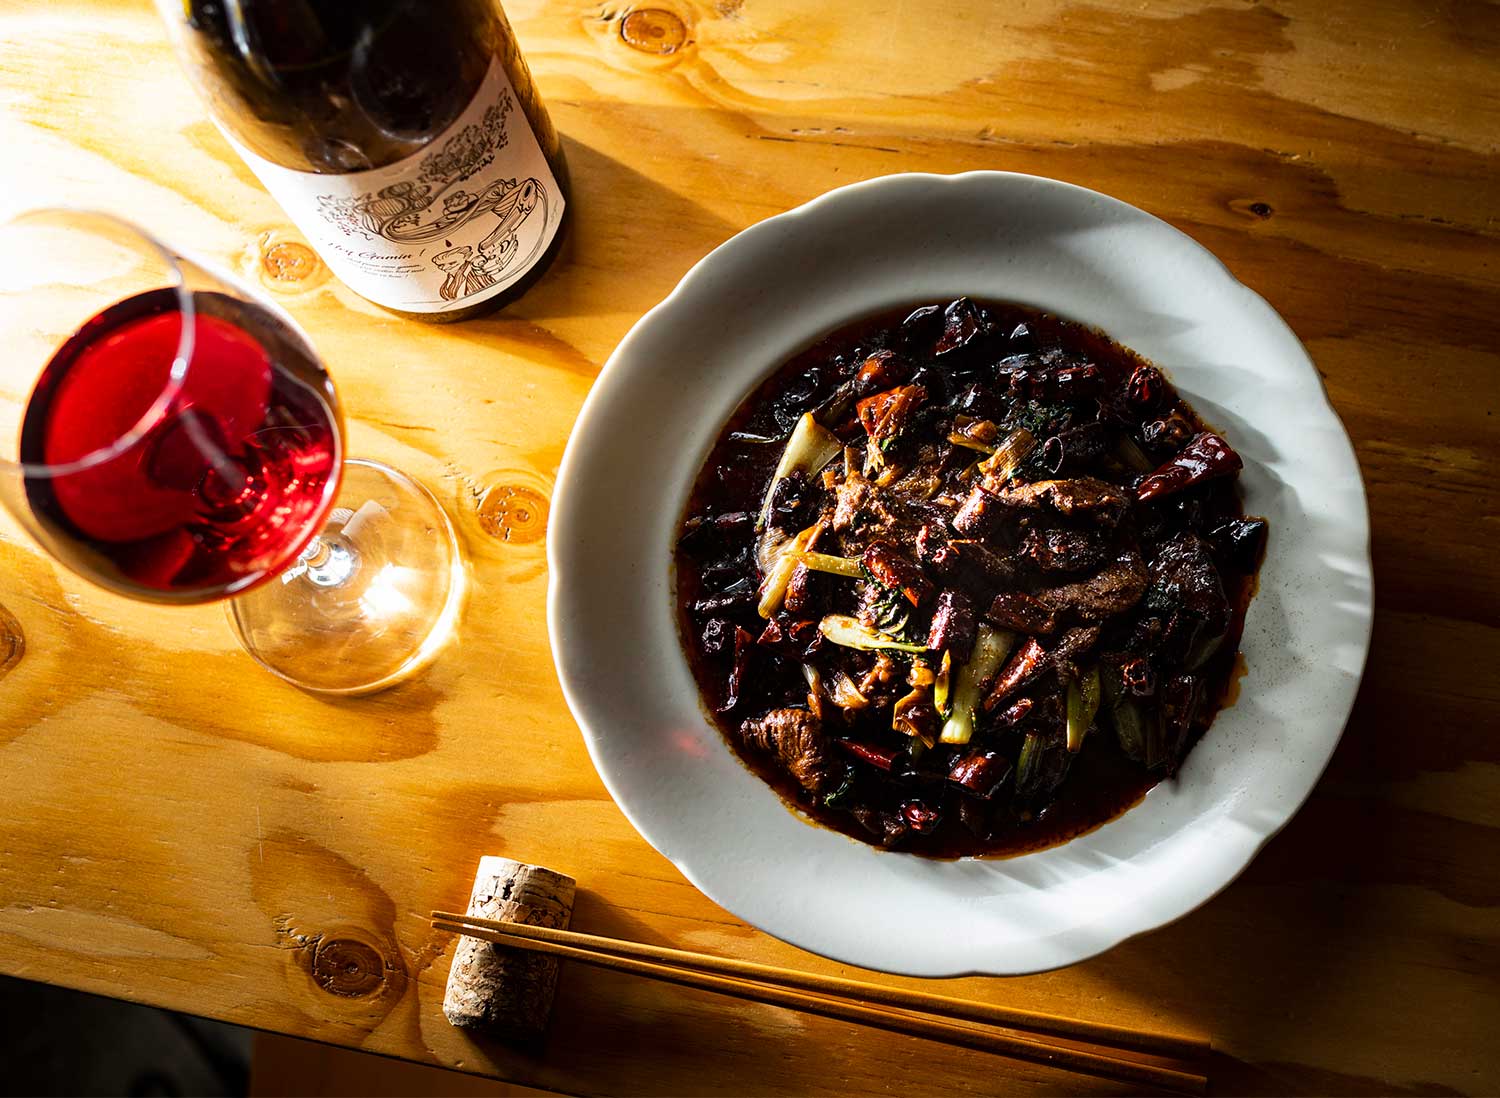 蝦夷鹿の水煮肉片2200円はうまみのある辛さでワインが進む。ワインはボトルのほか、グラスも5種類用意。